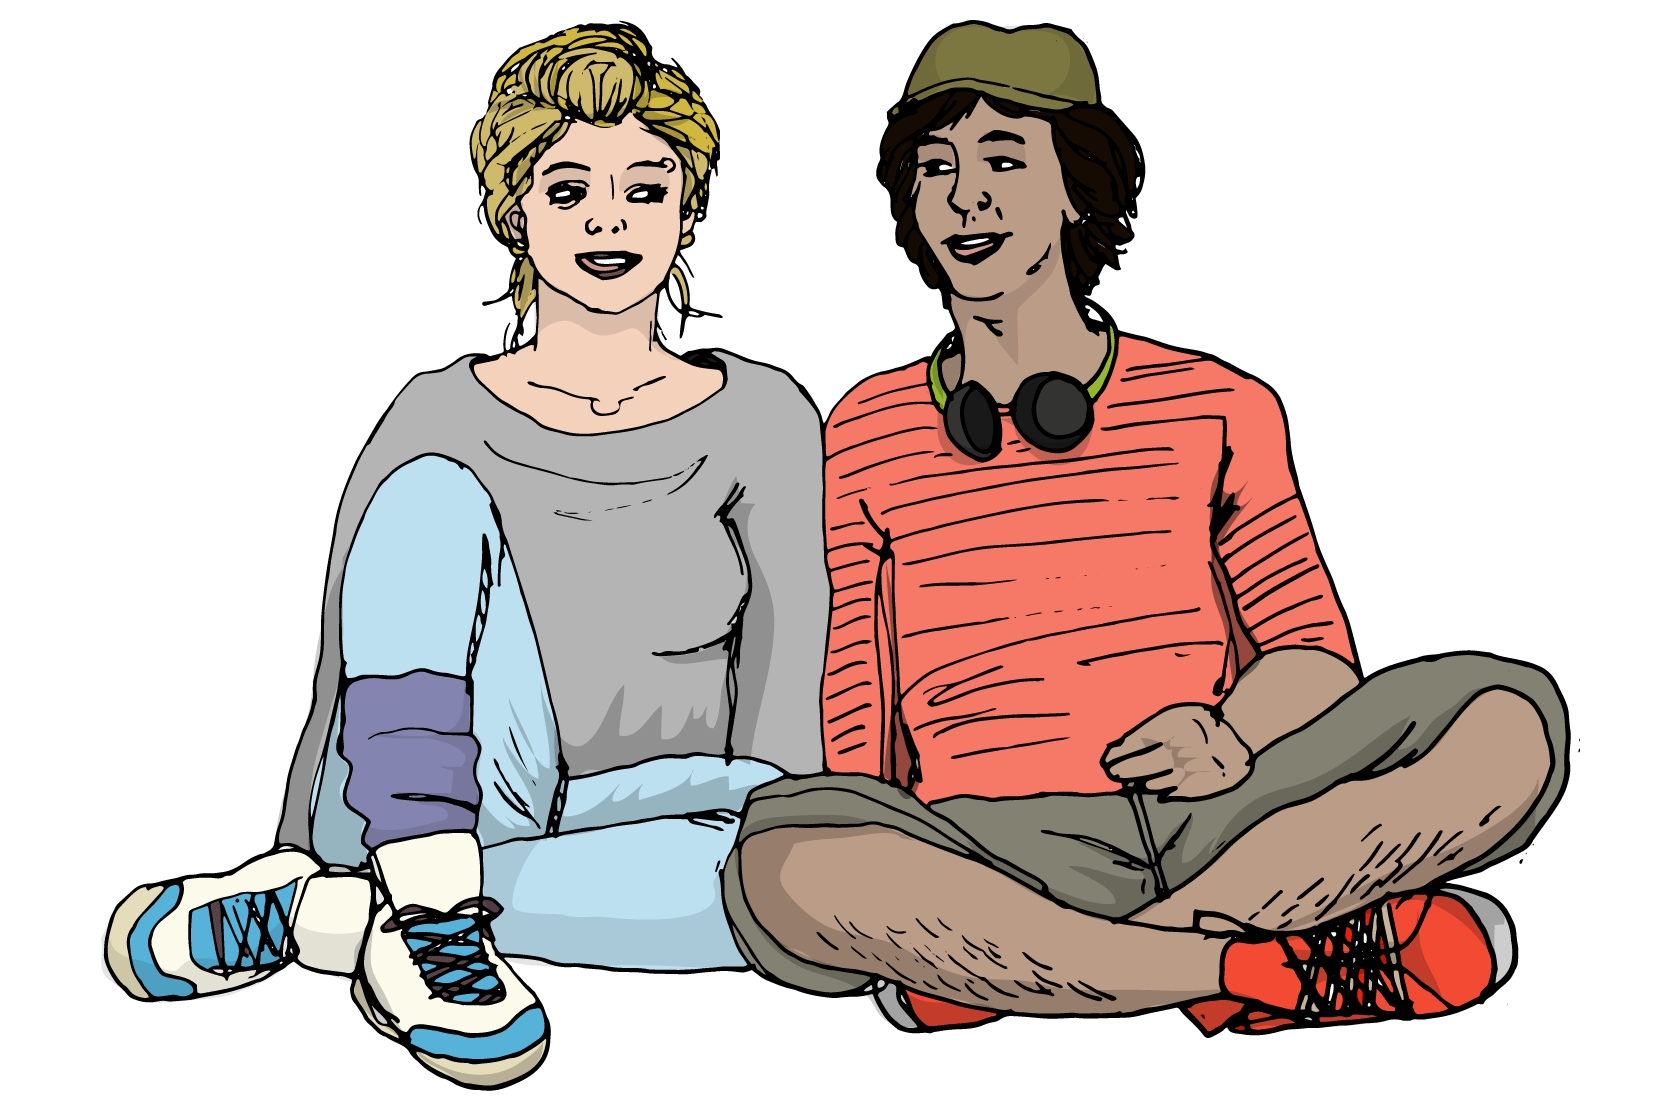 En tjej och en kille som sitter bredvid varandra på marken. De se ut att prata med varandra och vara glada. Illustration.